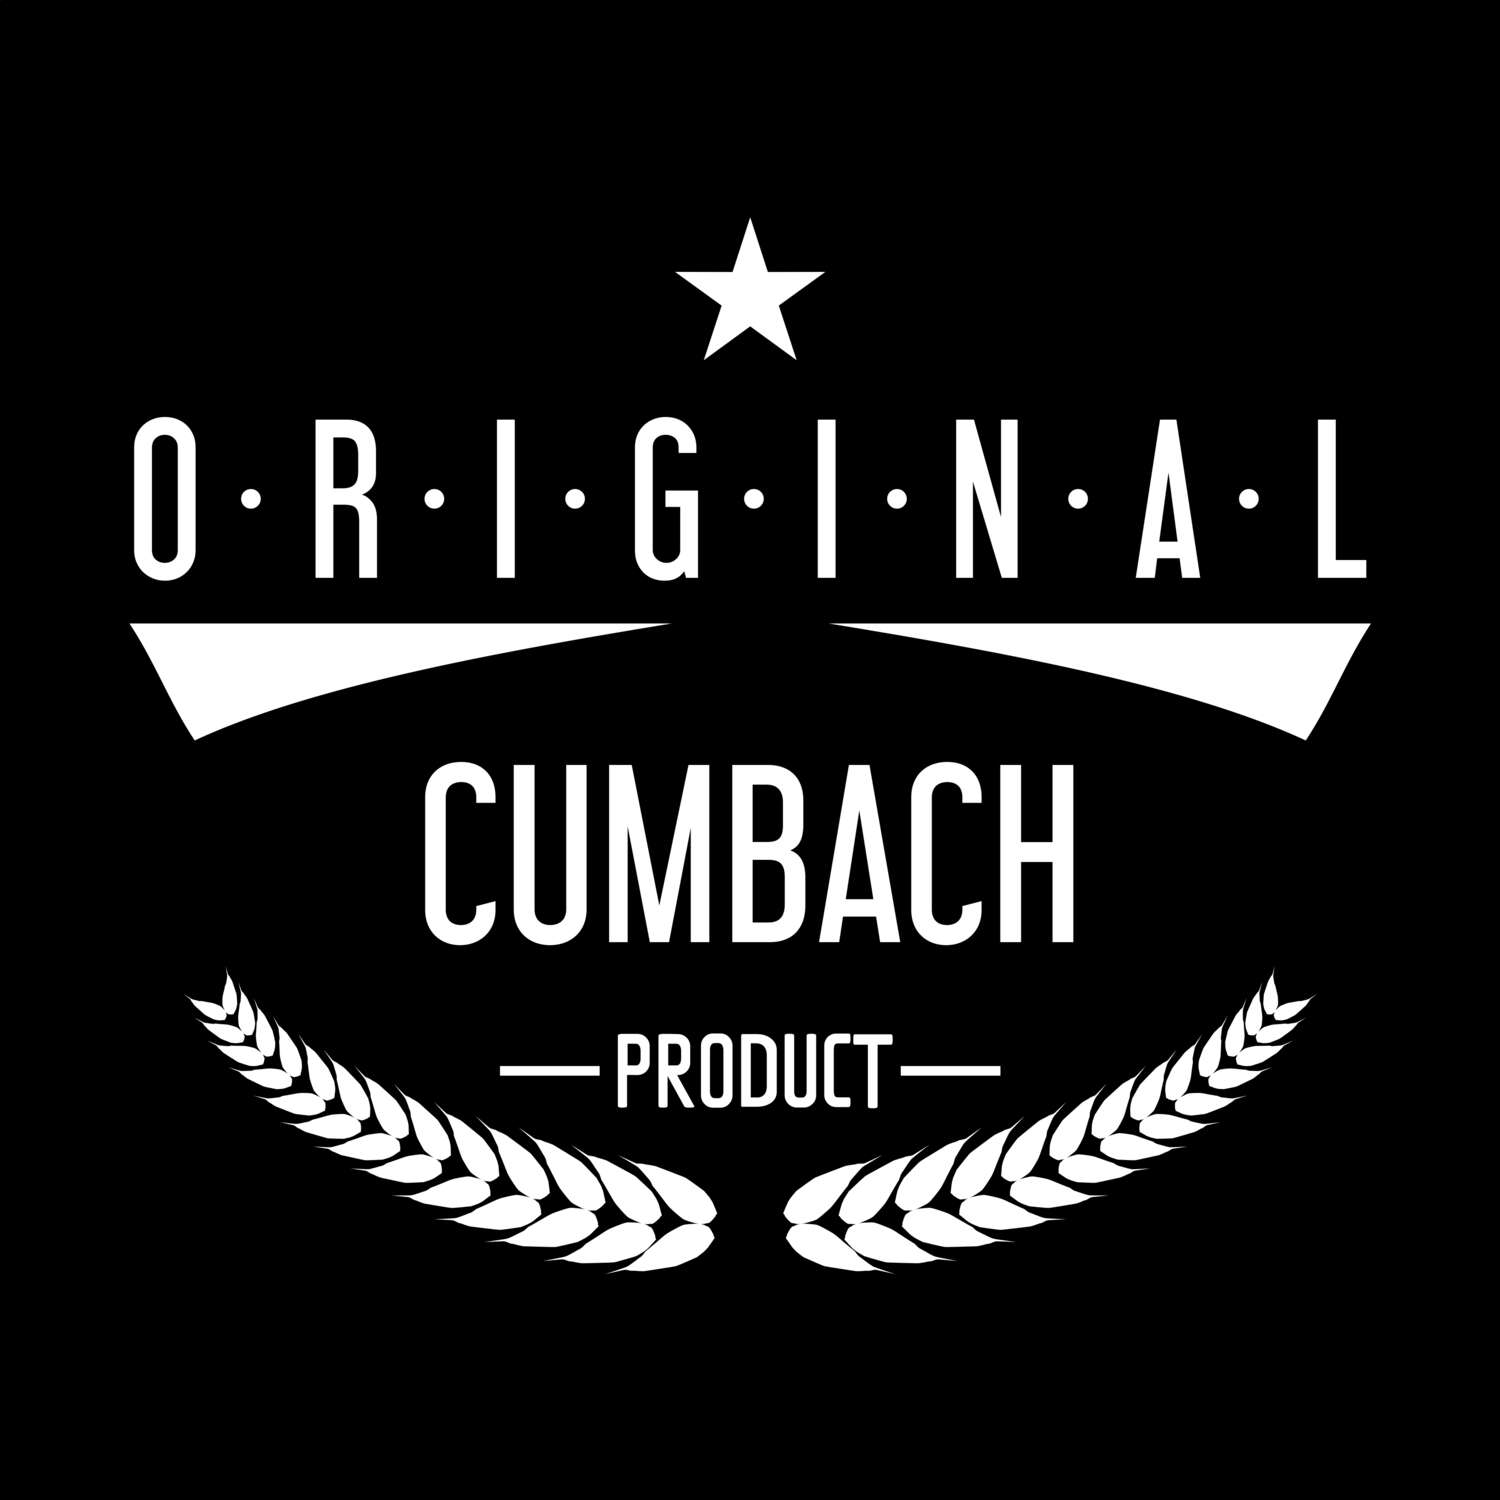 Cumbach T-Shirt »Original Product«